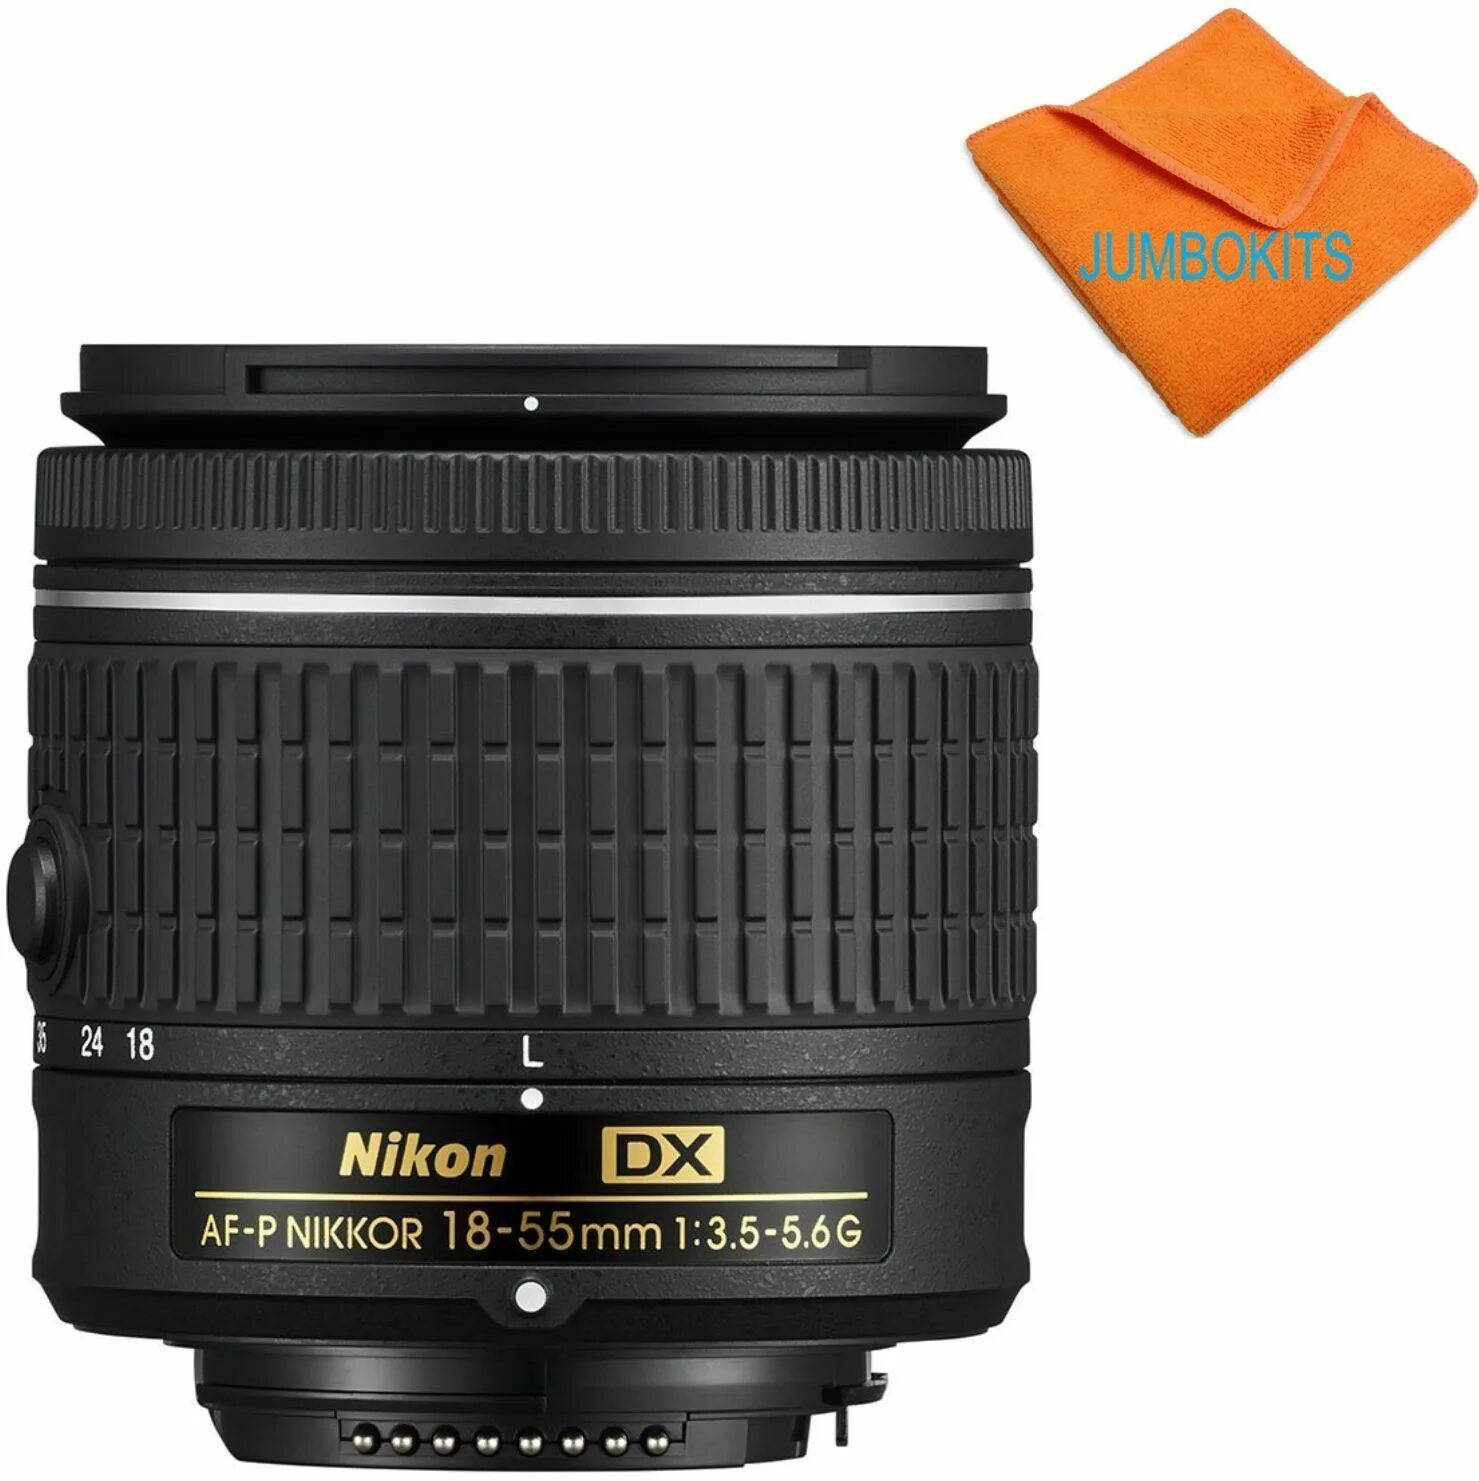 Nikkor 18 55mm vr. Af-p DX Nikkor 18-55mm f/3.5-5.6g VR. Nikon 18-55mm f/3.5-5.6g af-p VR DX. Nikon 18 55 VR af p. Af-p DX 18-55mm f/3.5-5.6g VR.